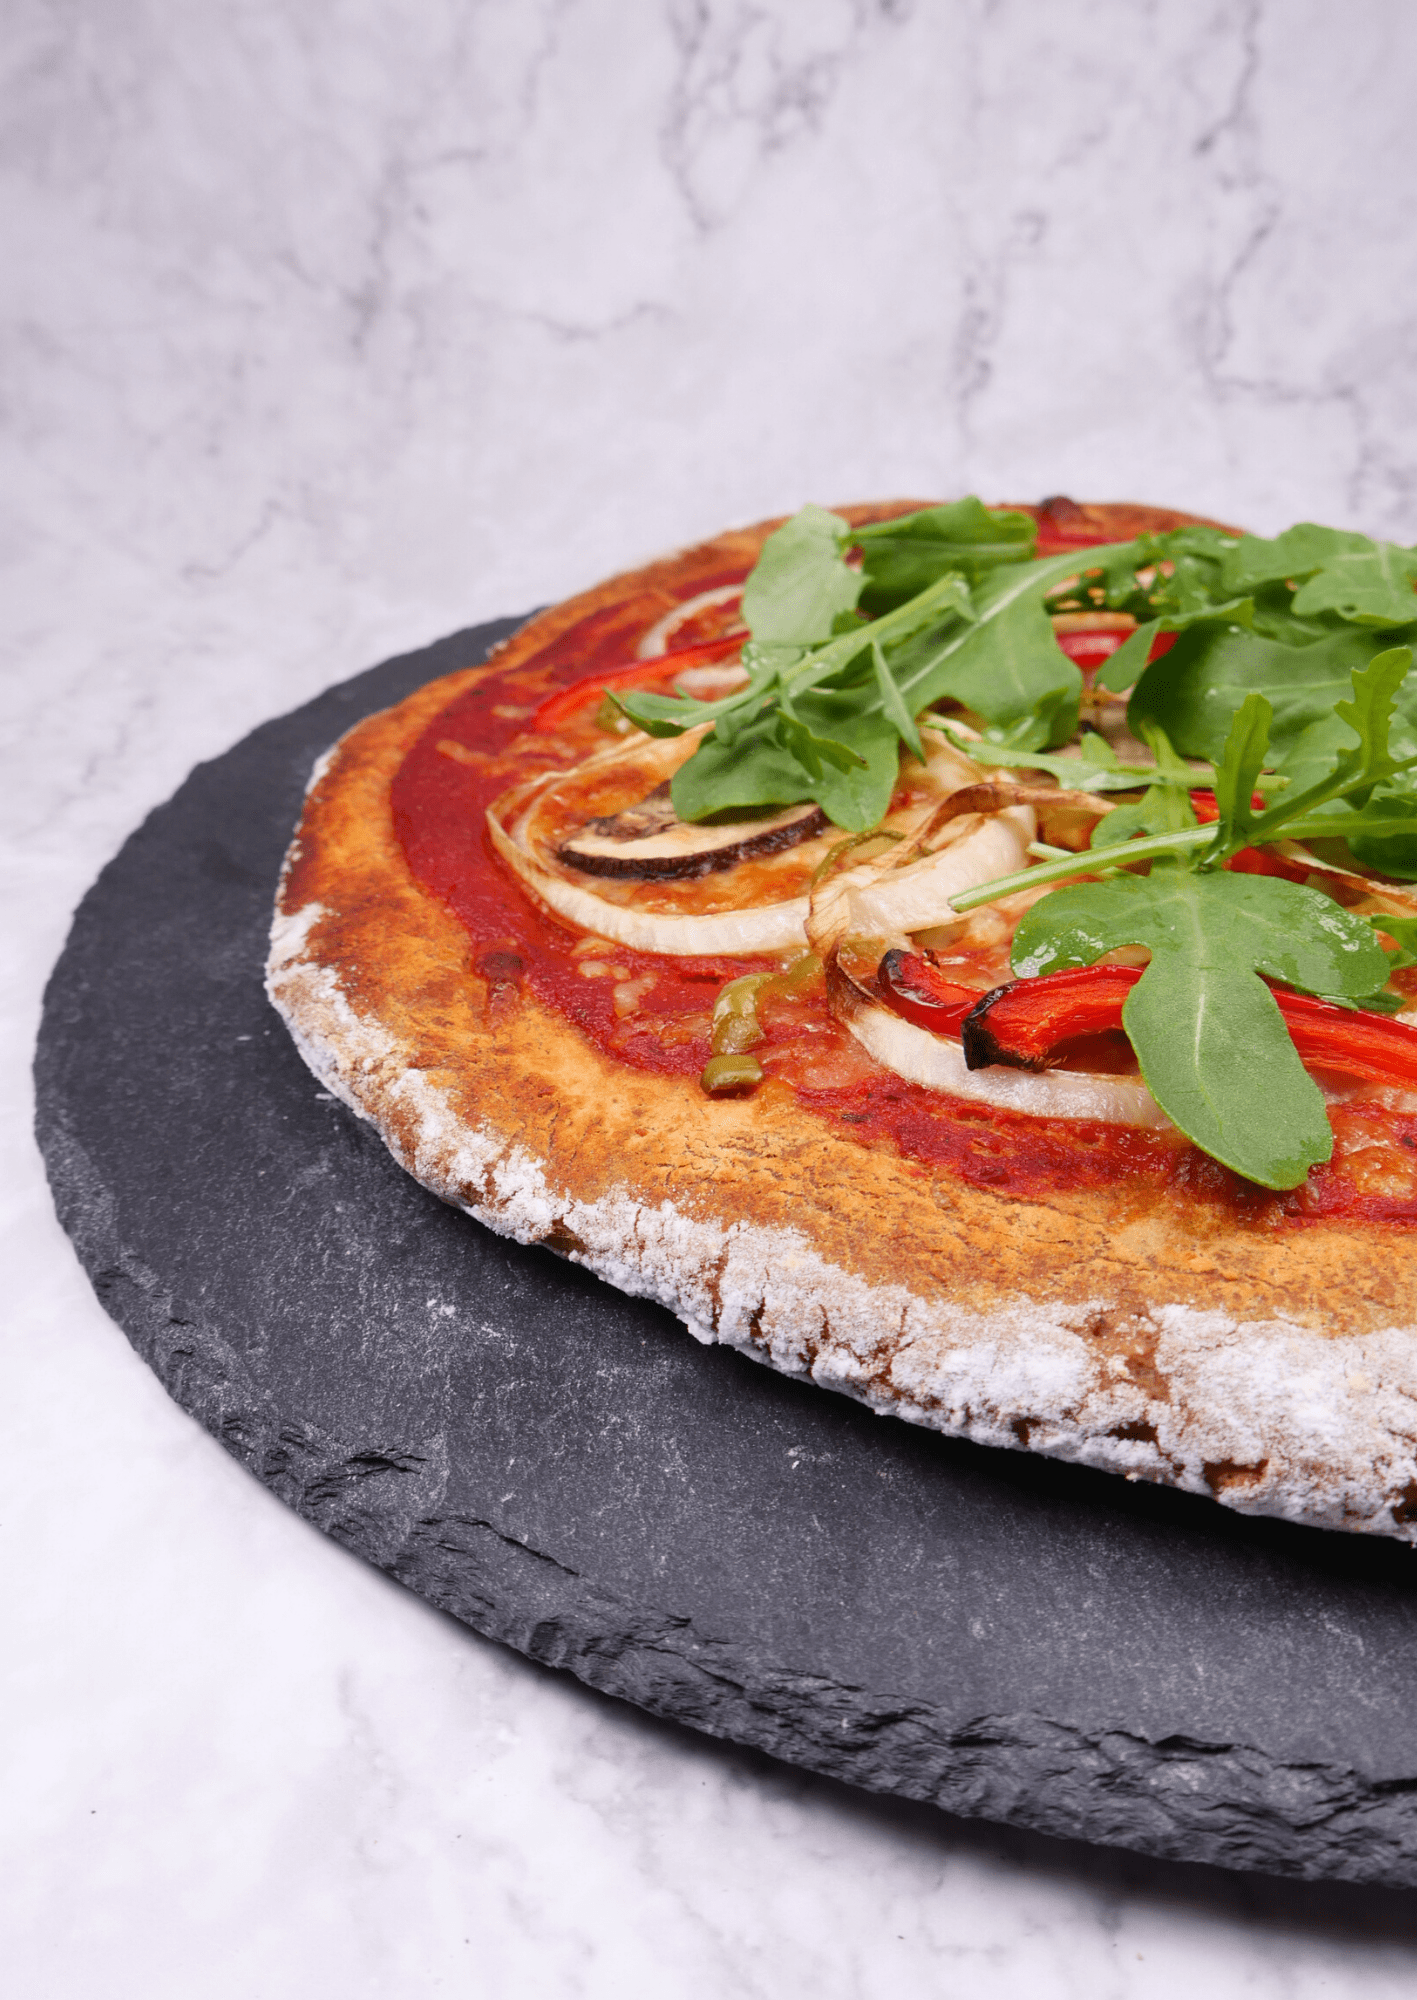 Aufnamhe von unserem fertig gebackenen, glutenfreien und ketogenen Produkt, mit dem Namen "Pizza Backmischung Adamo"